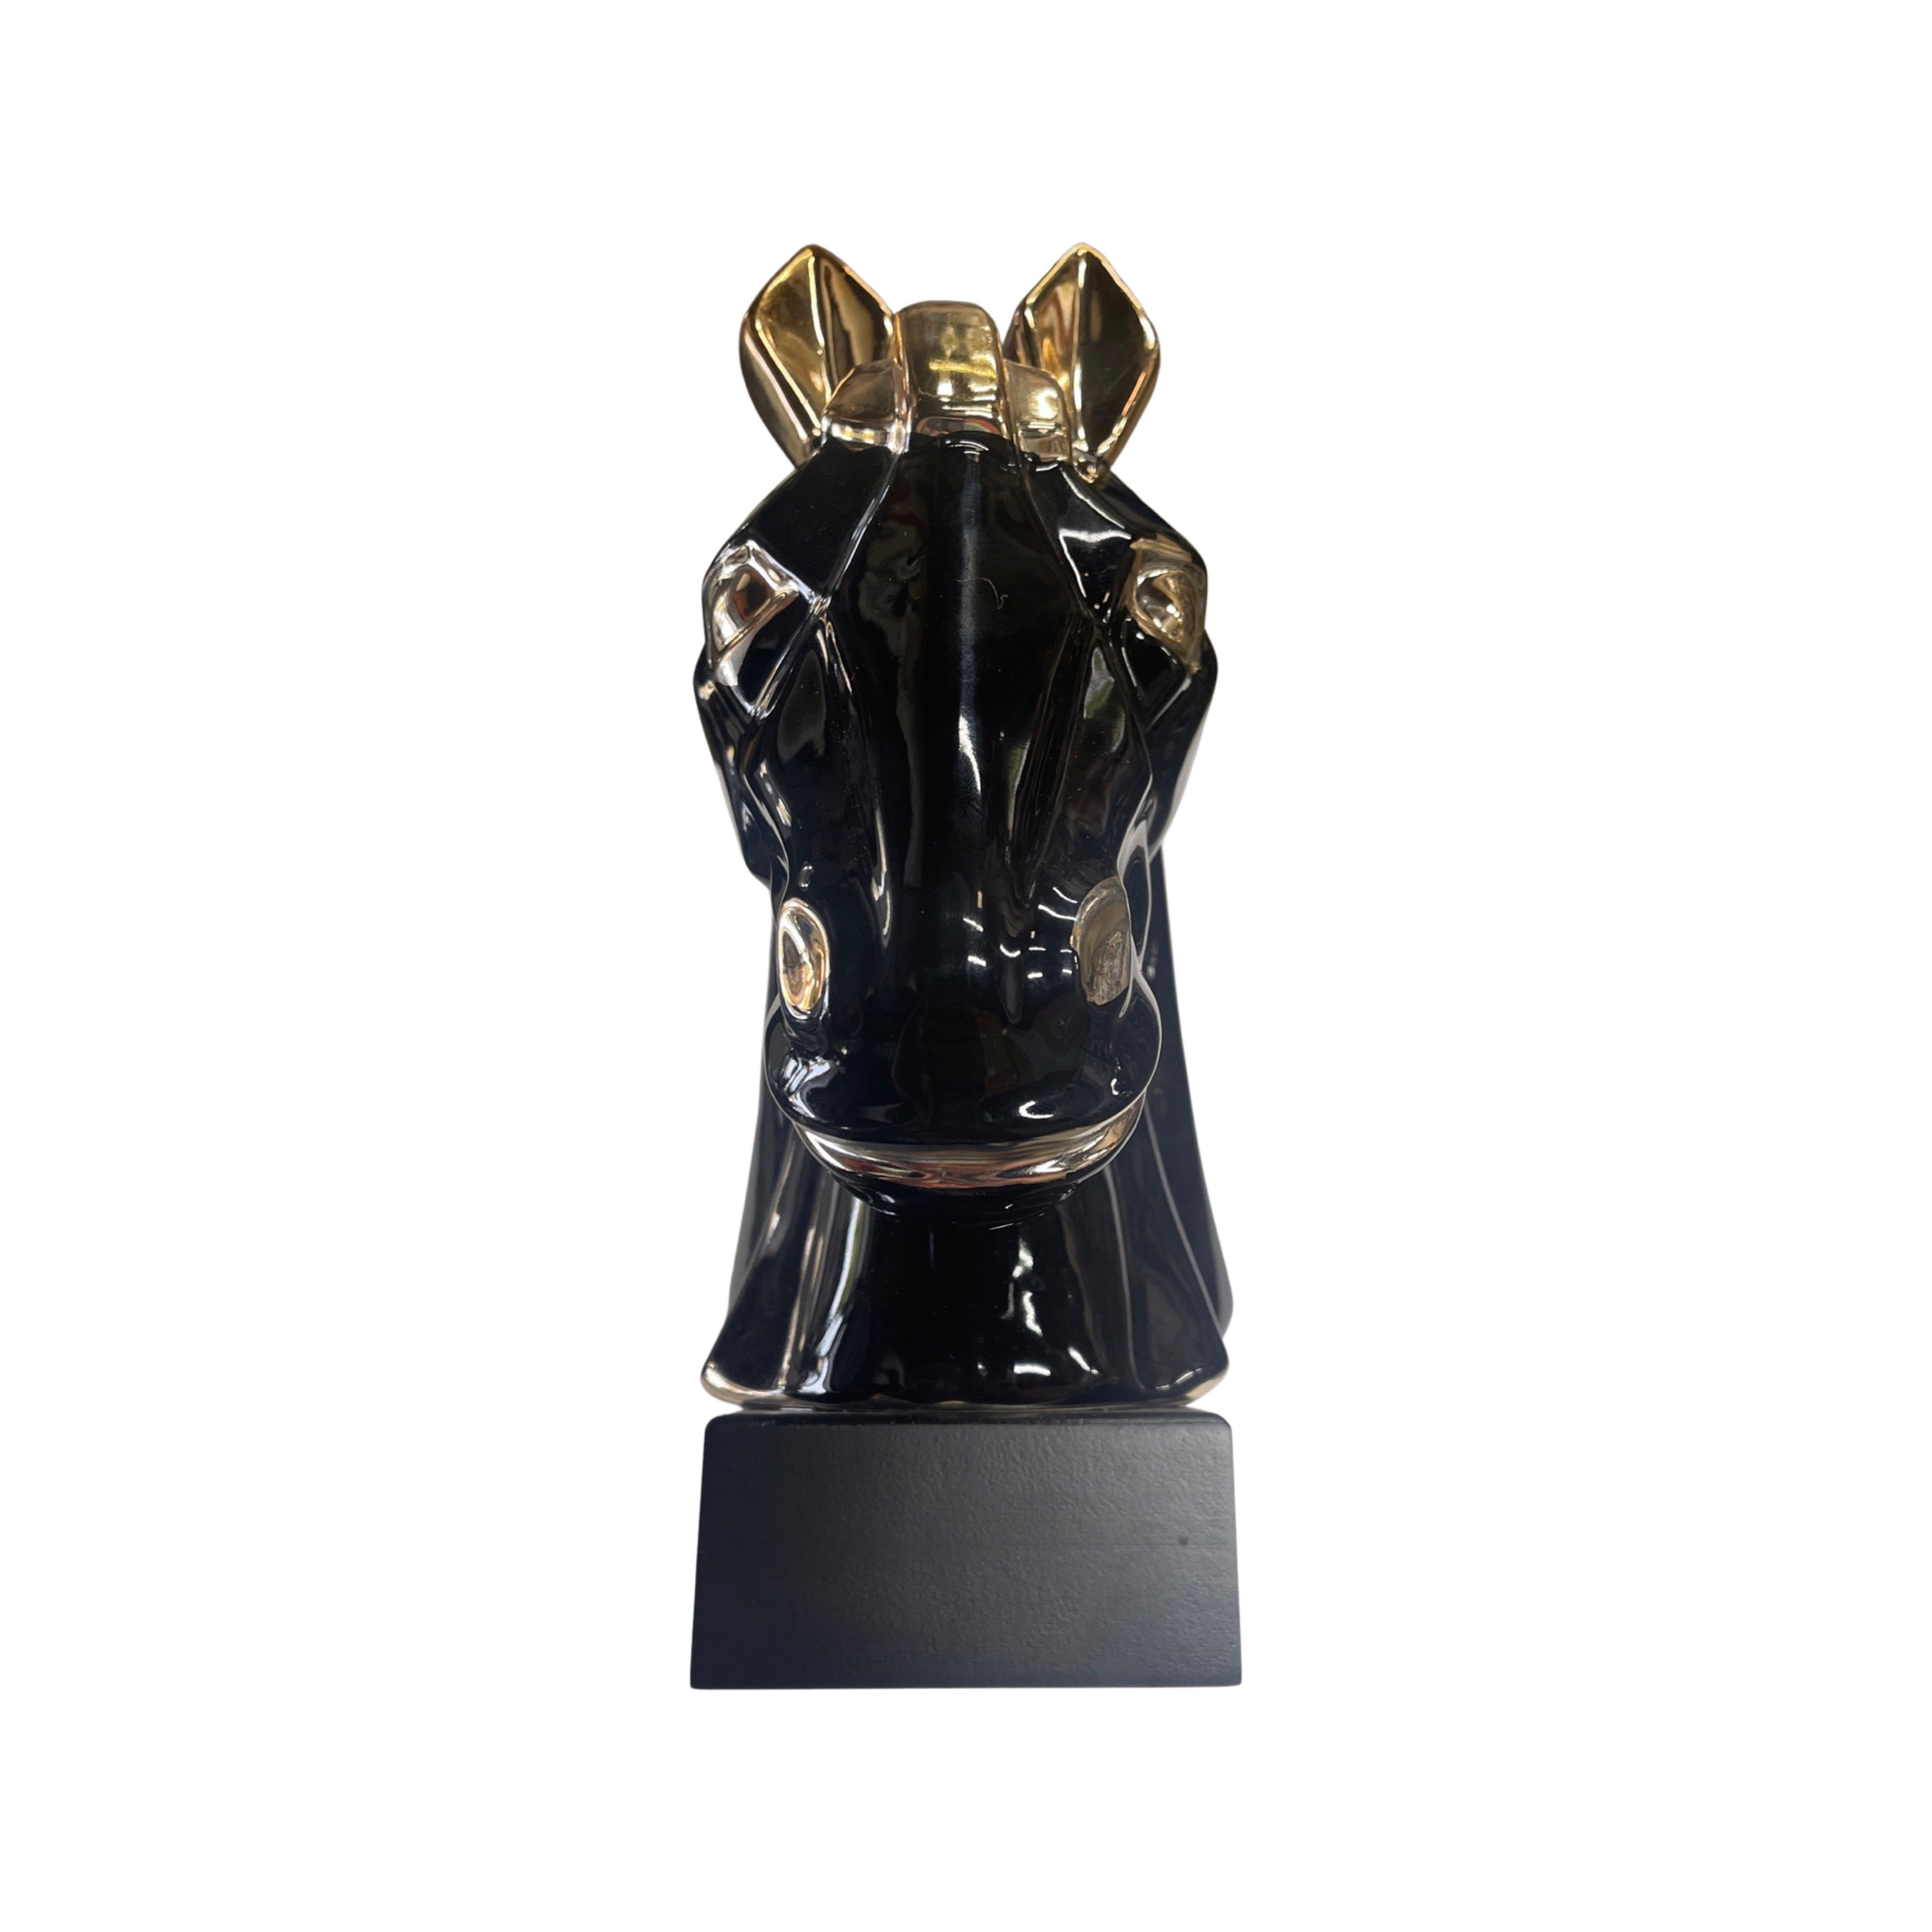 Black and Gold Ceramic Horse Sculpture - 12"